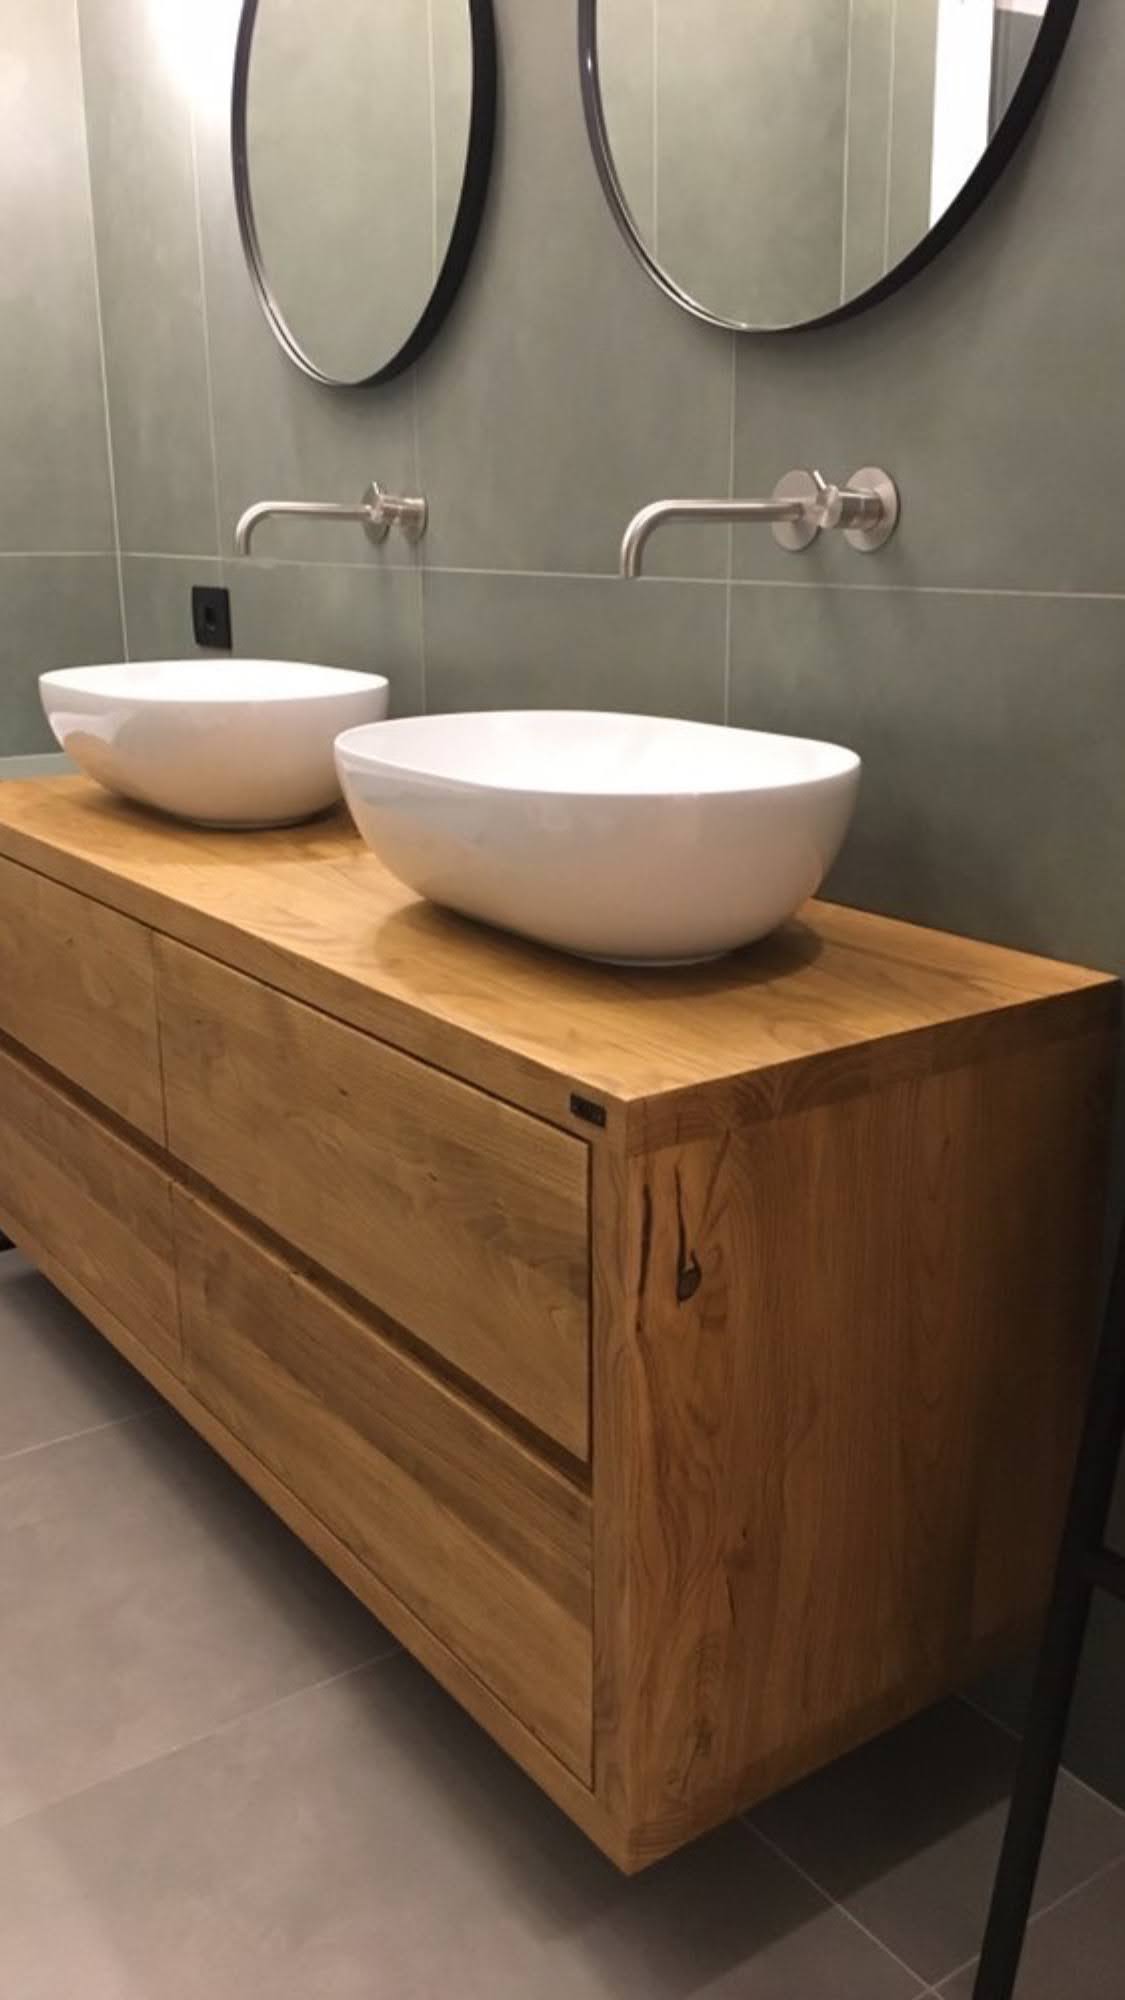 Mobile bagno mensola legno massello per lavabo appoggio 150x50x6